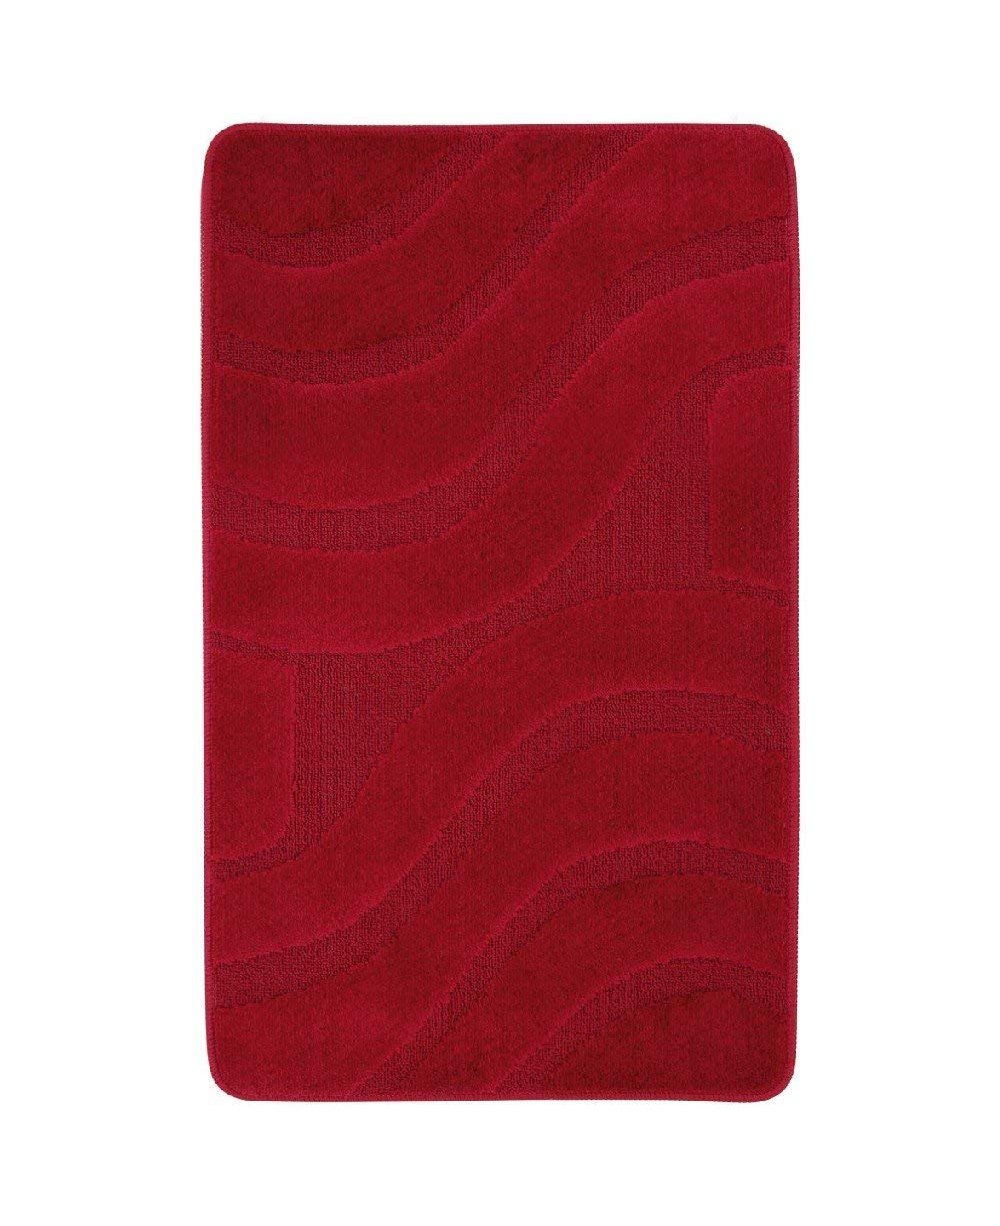 Tappeto polipropilene serie onda 60x100 cm rosso